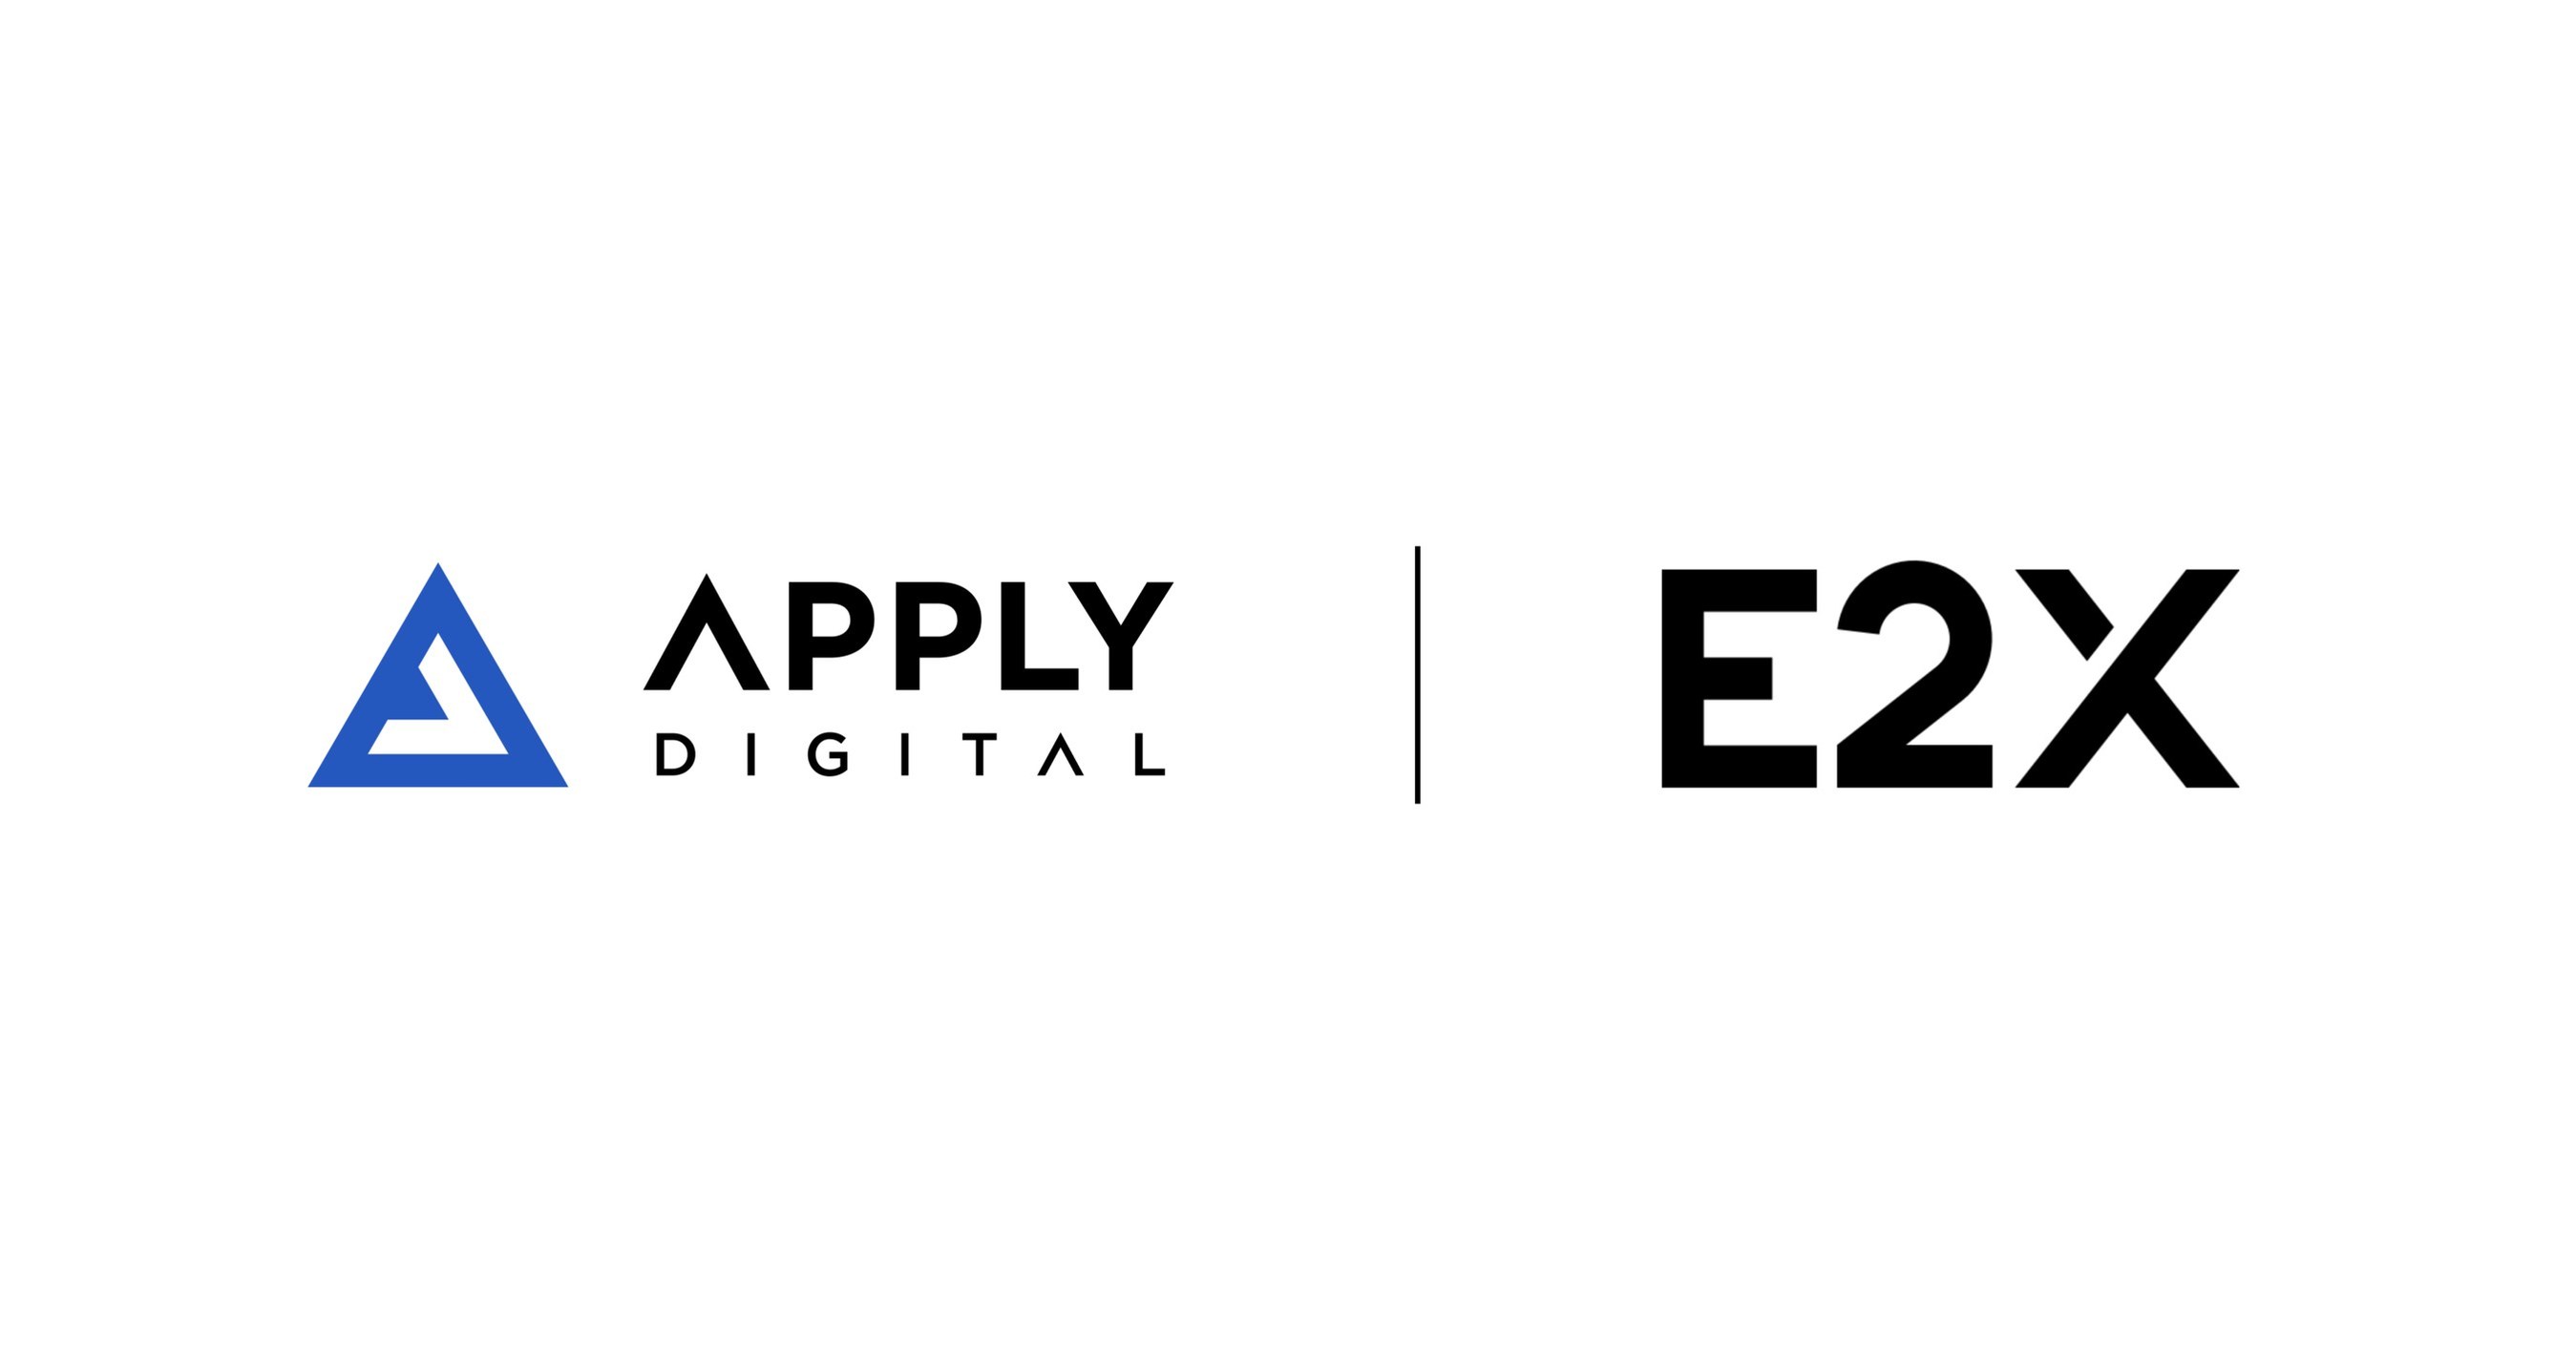 Apply Digital neemt E2X.COM over om digitale oplossingen en zakelijke diensten te ontwikkelen voor moderne bedrijven